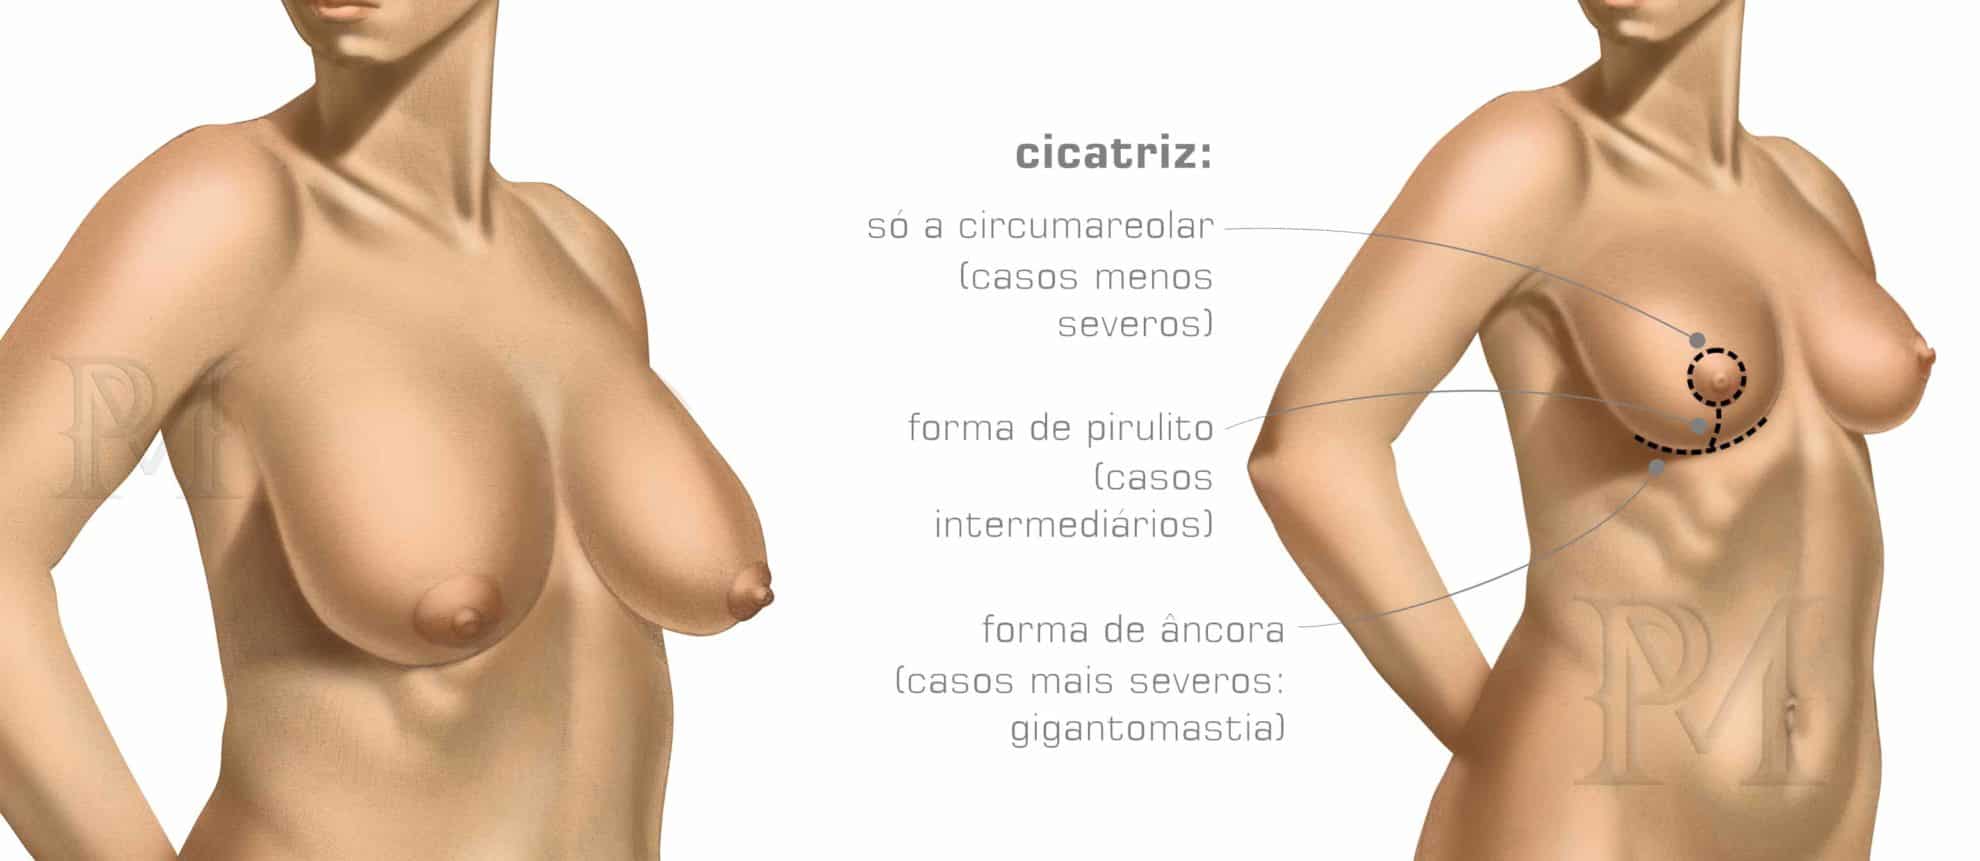 mamoplastia redutora antes e depois - Dr. Daniel Pinheiro Machado | Cirurgião Plástico